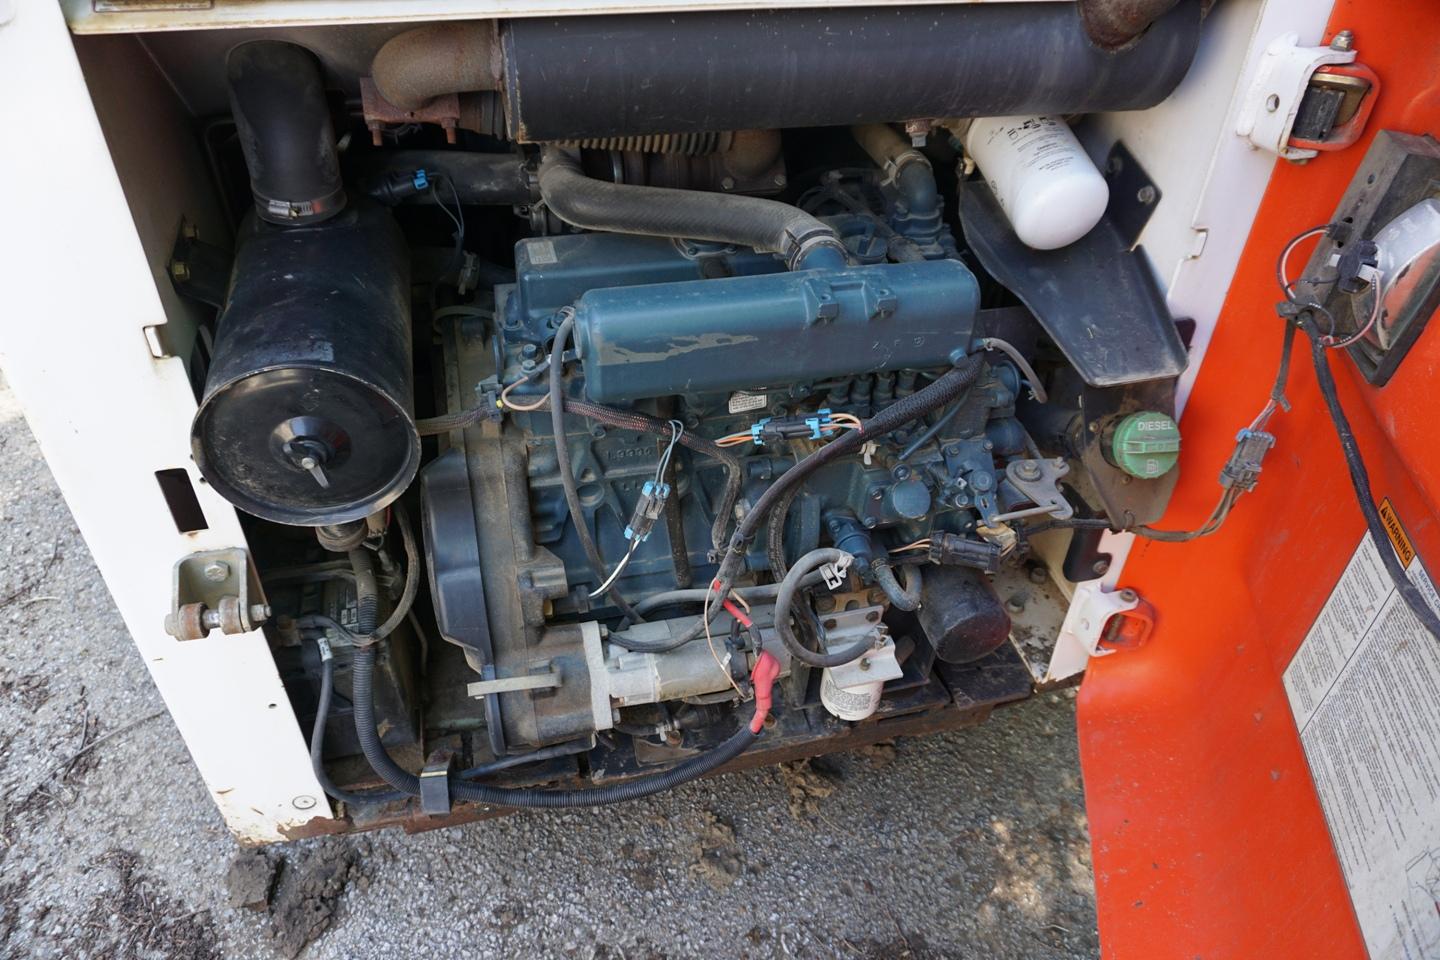 2004 Bobcat S175 Turbo Side Steer Loader, Kubota 4-Cylinder Diesel Engine, 1,155 Actual Hours, OROPS